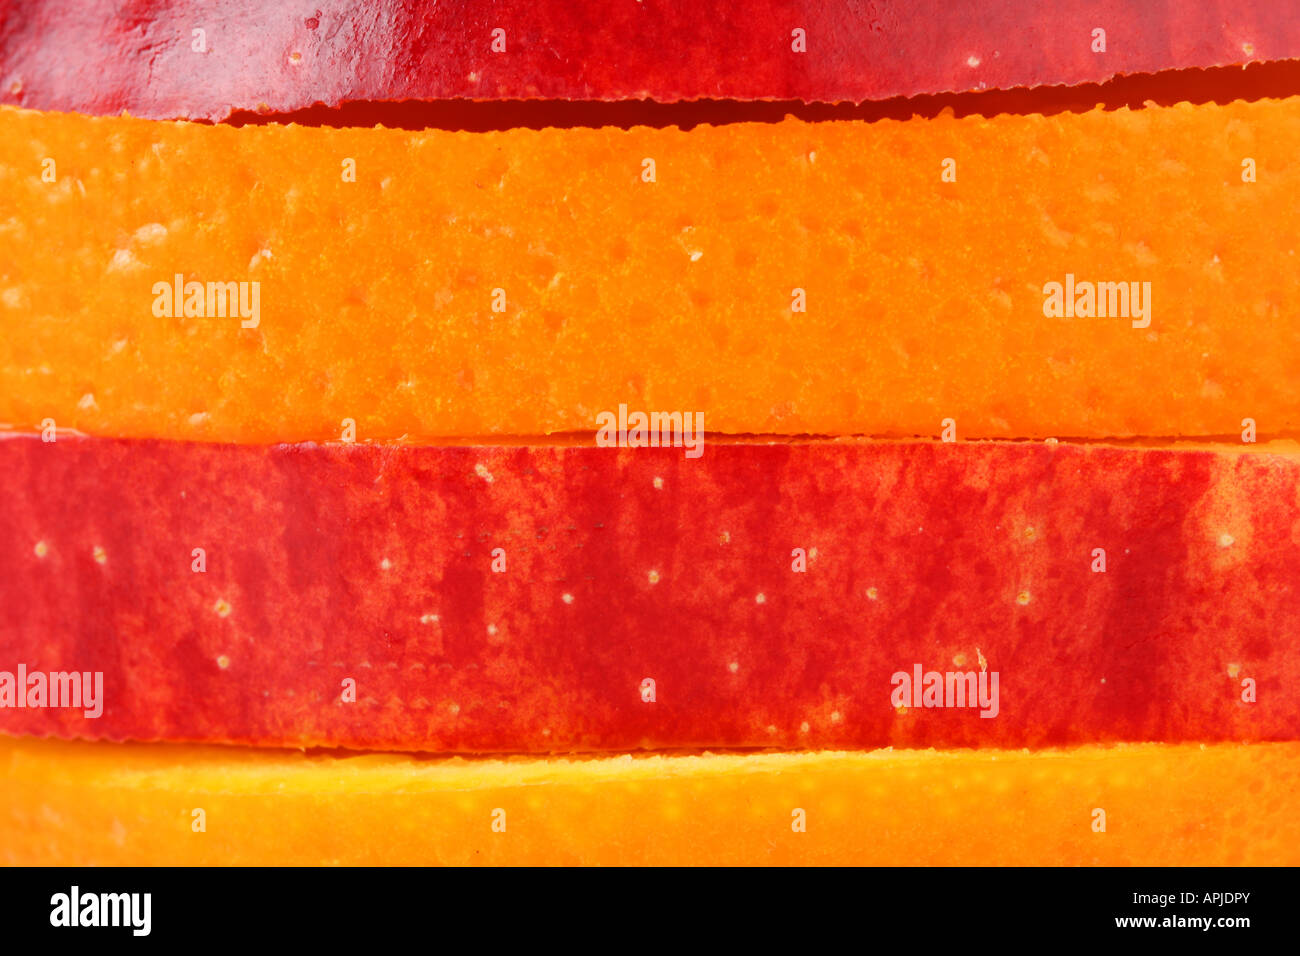 Scheiben vom Apfel und Orange zu bunten Streifen Form zusammenstellen Stockfoto